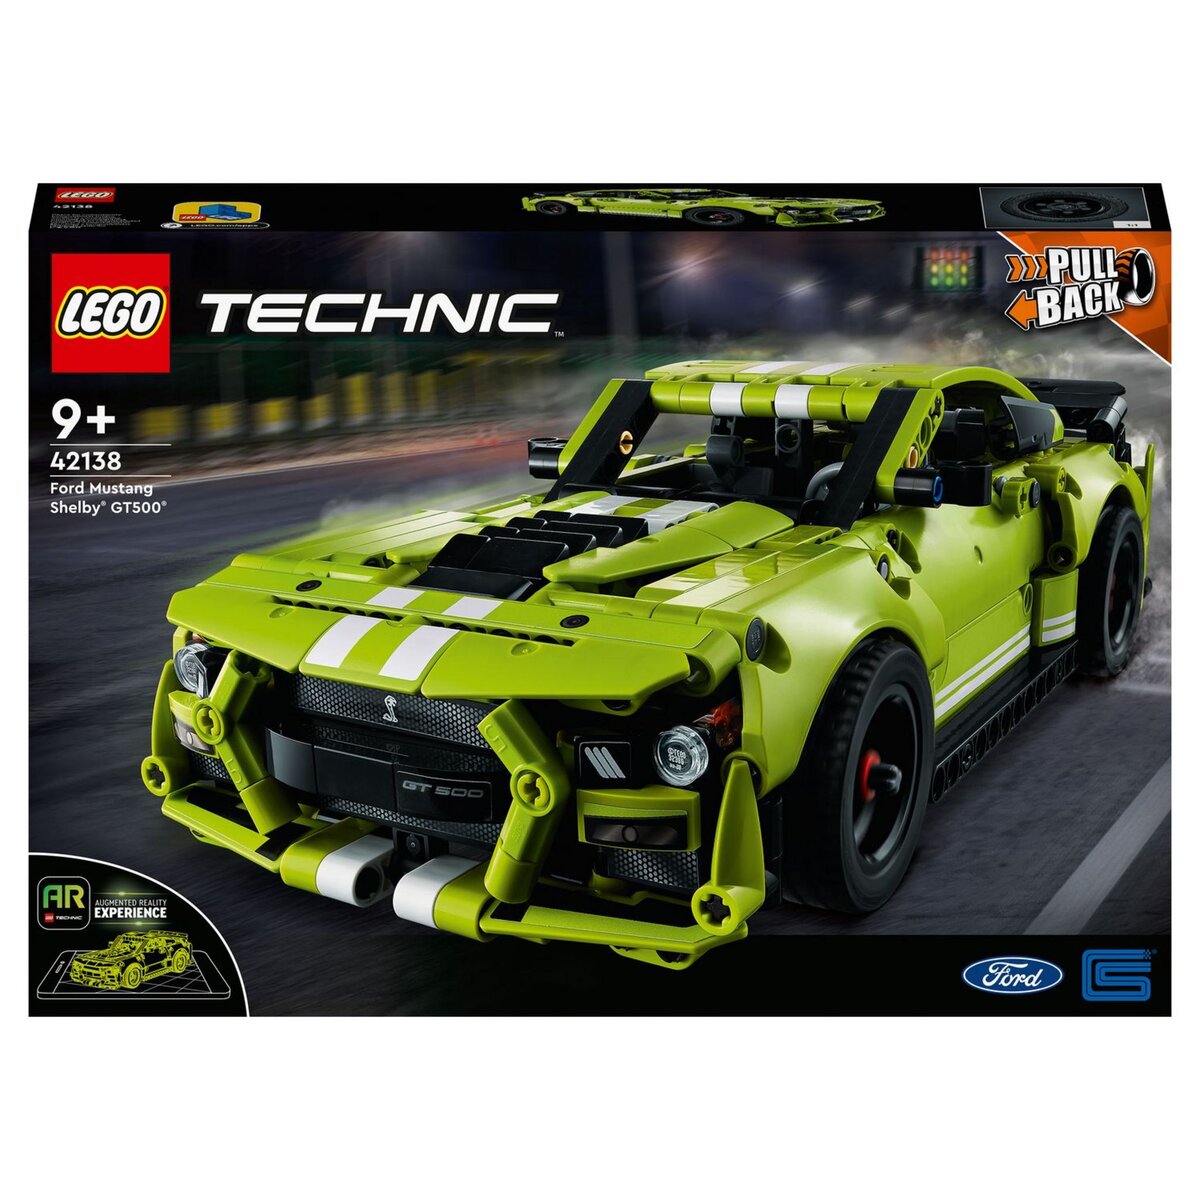 LEGO Technic 42138 La Ford Mustang Shelby GT500 Jouet Voiture de Course